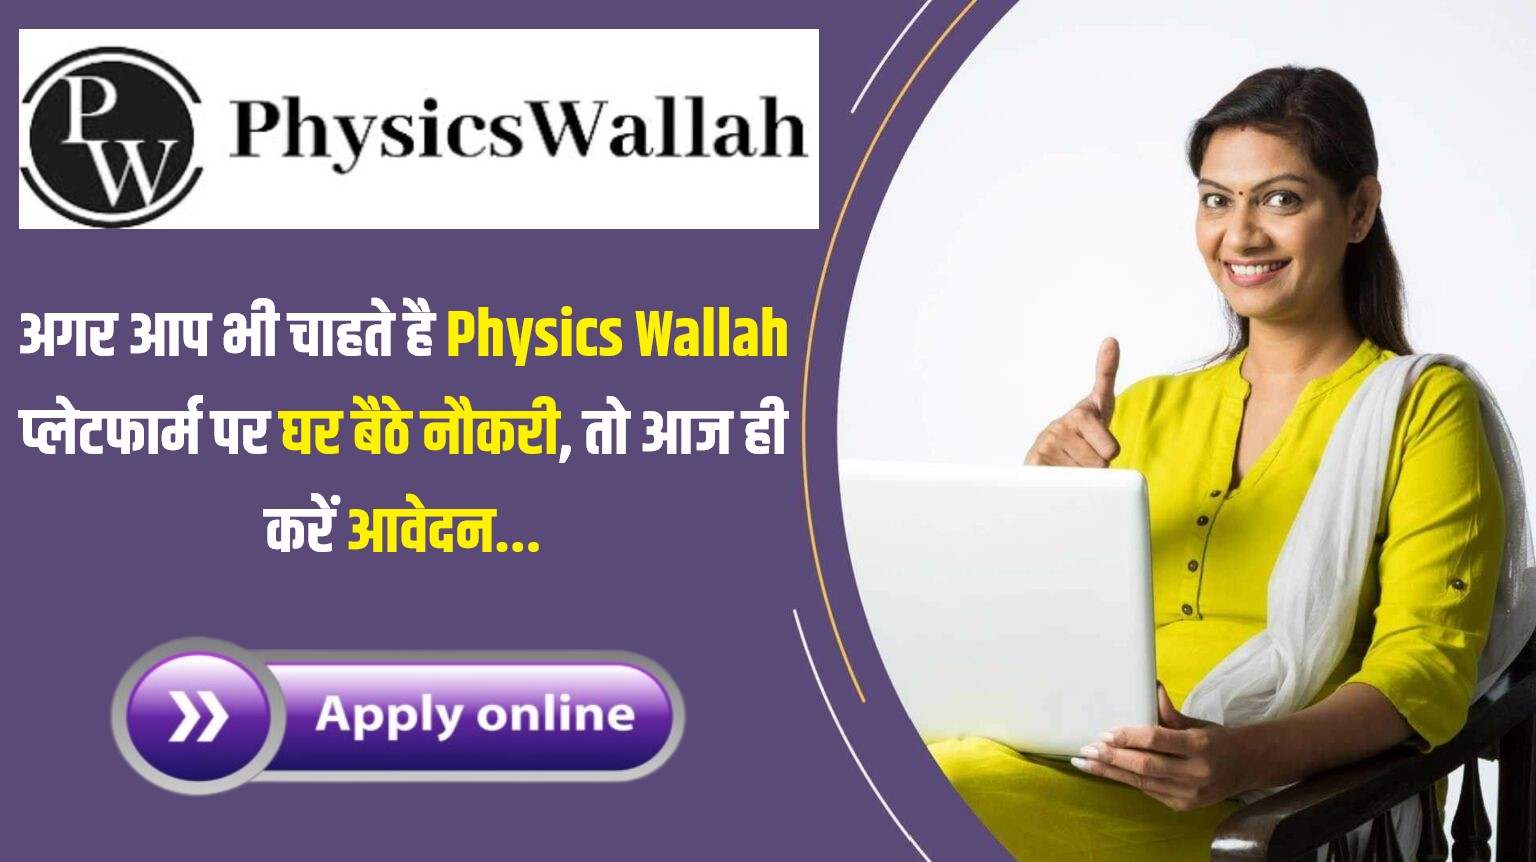 Physics Wallah Work From Home Job | अगर आप भी चाहते है Physics Wallah प्लेटफार्म पर घर बैठे नौकरी, तो आज ही करें आवेदन